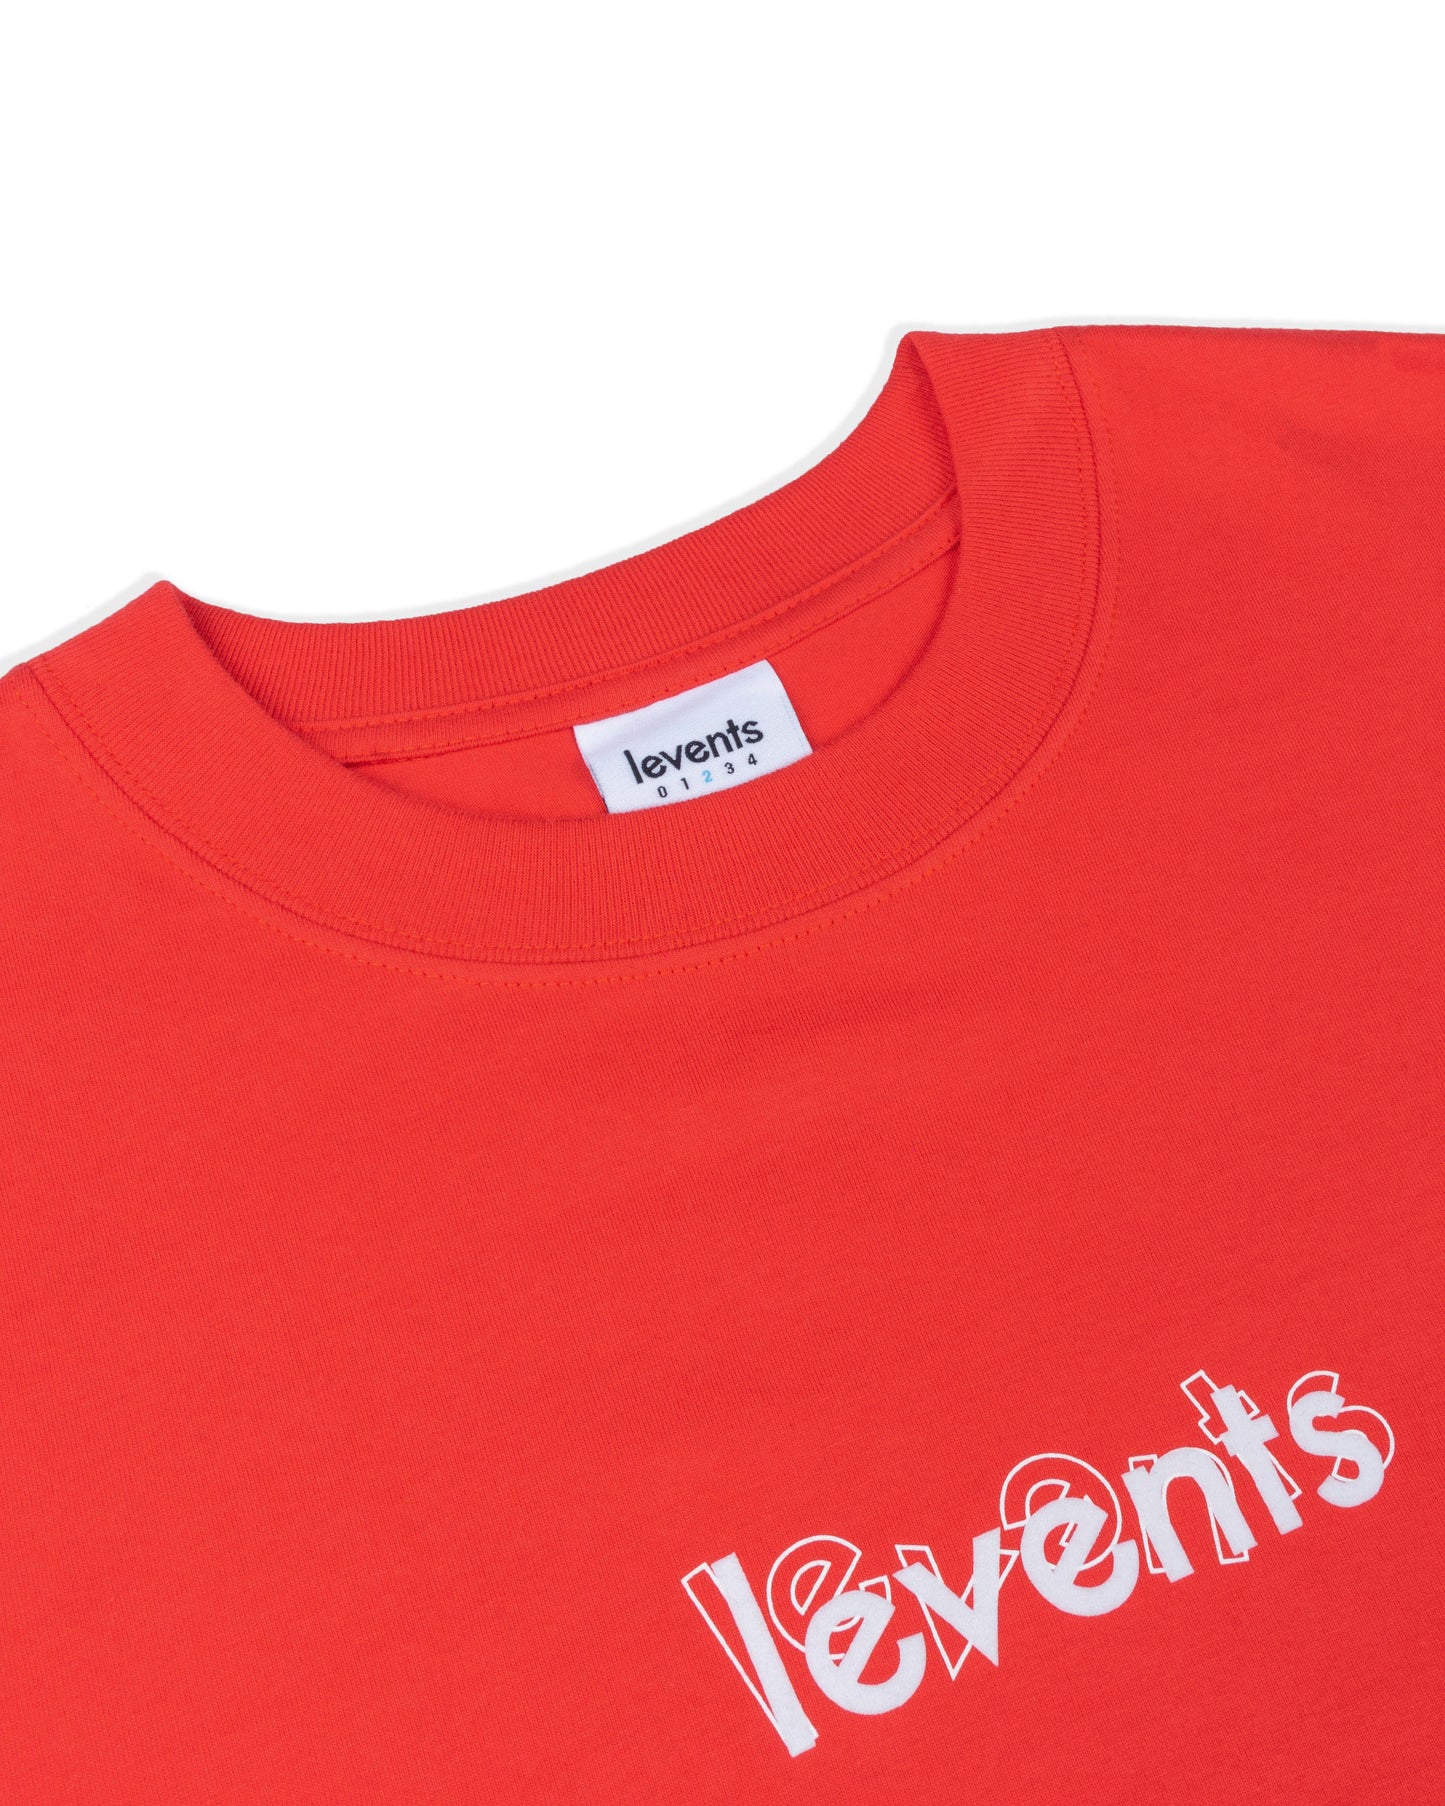 Levents® Velvet Mini Popular Logo/ Red